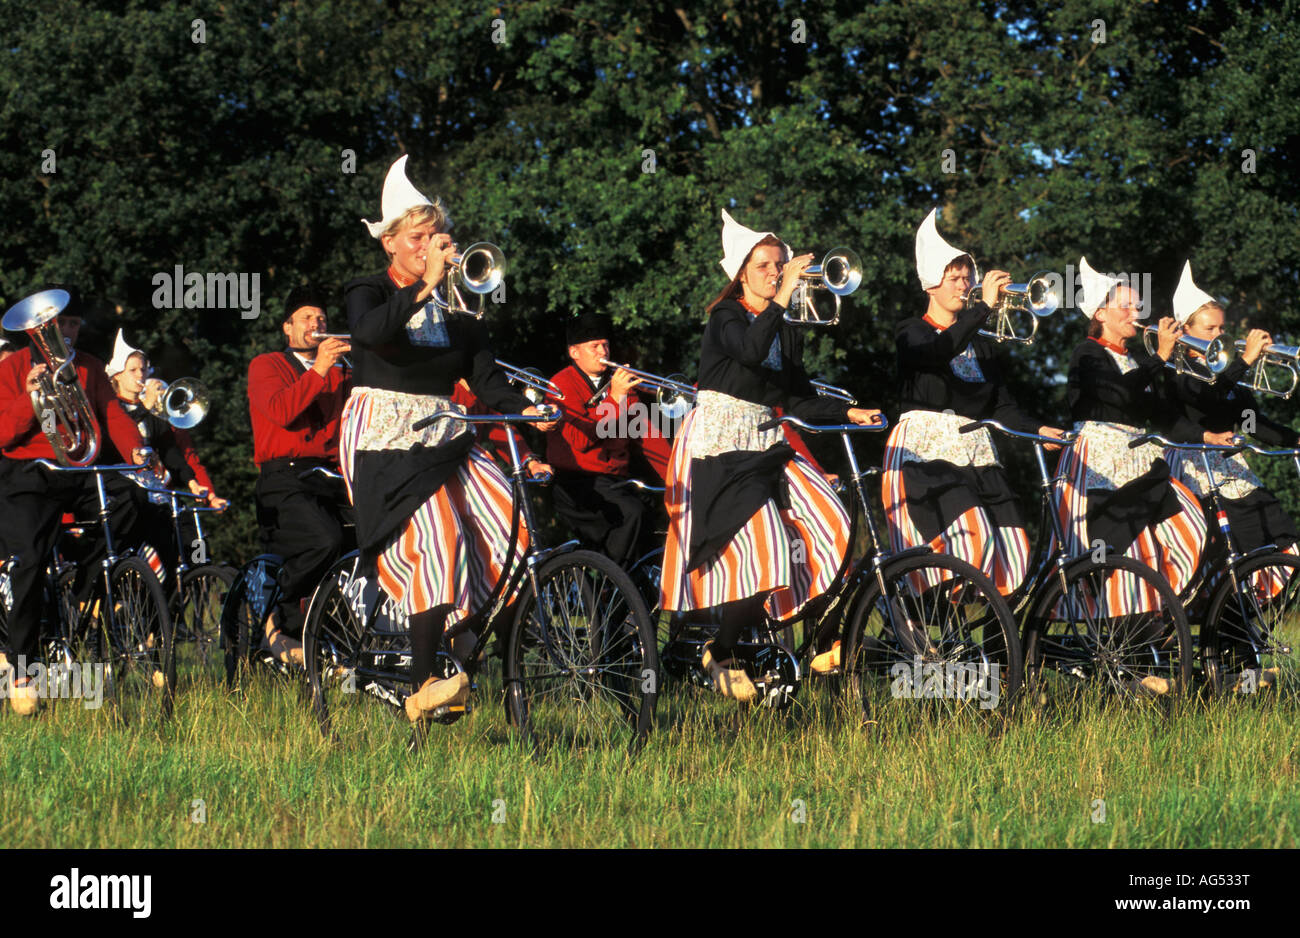 Pays-bas Opende Band crescendo d'effectuer en costume traditionnel néerlandais Banque D'Images